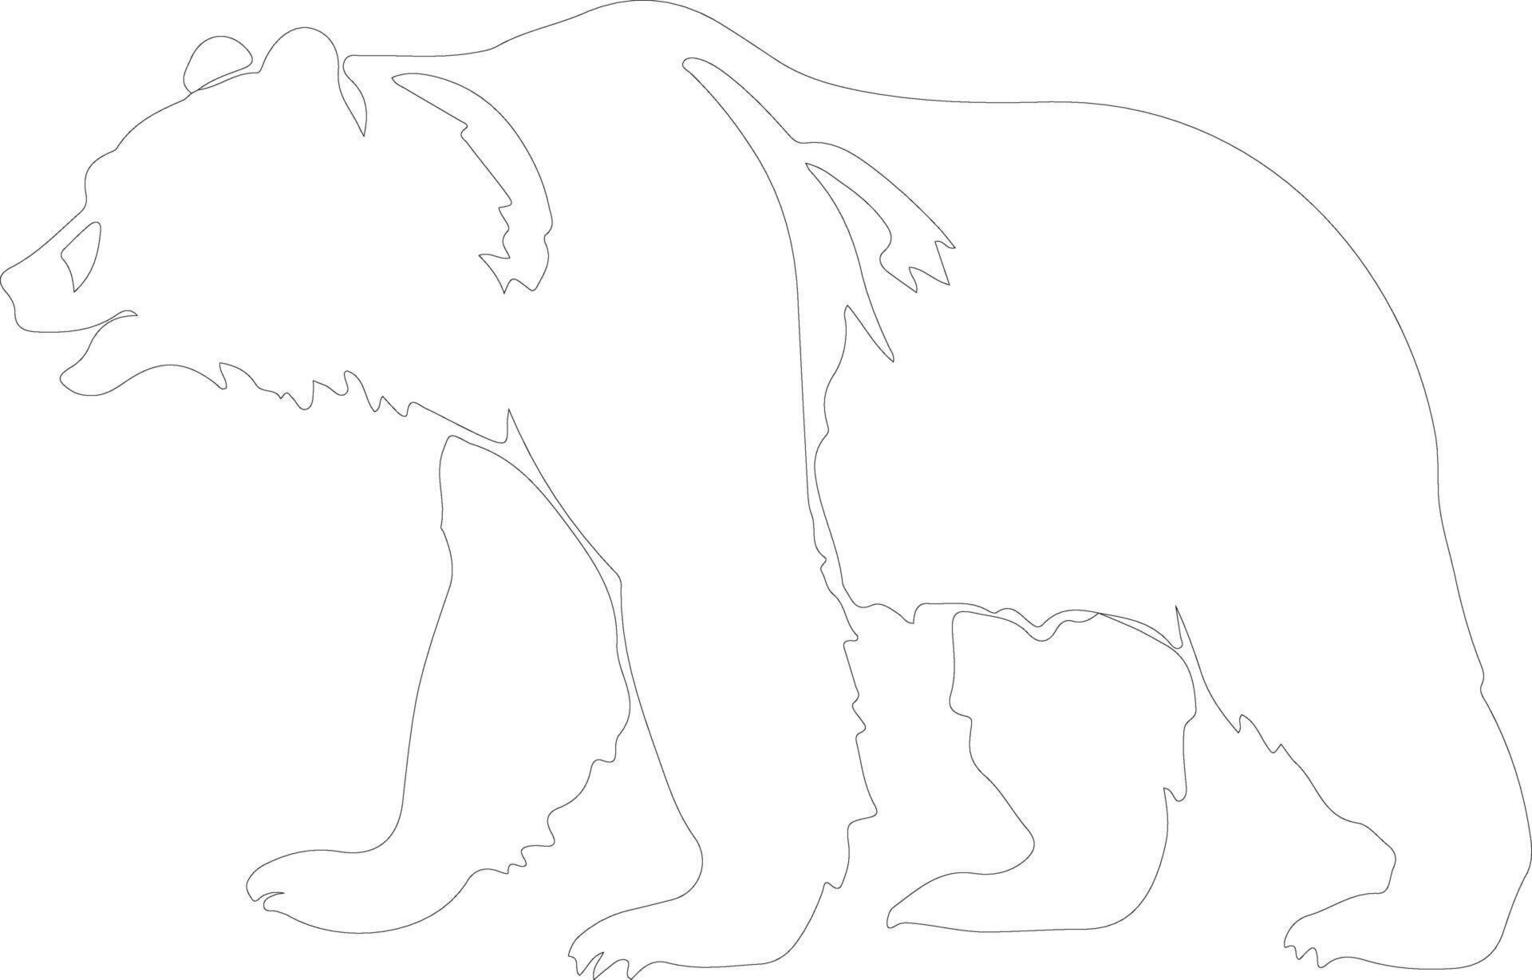 grizzly orso schema silhouette vettore